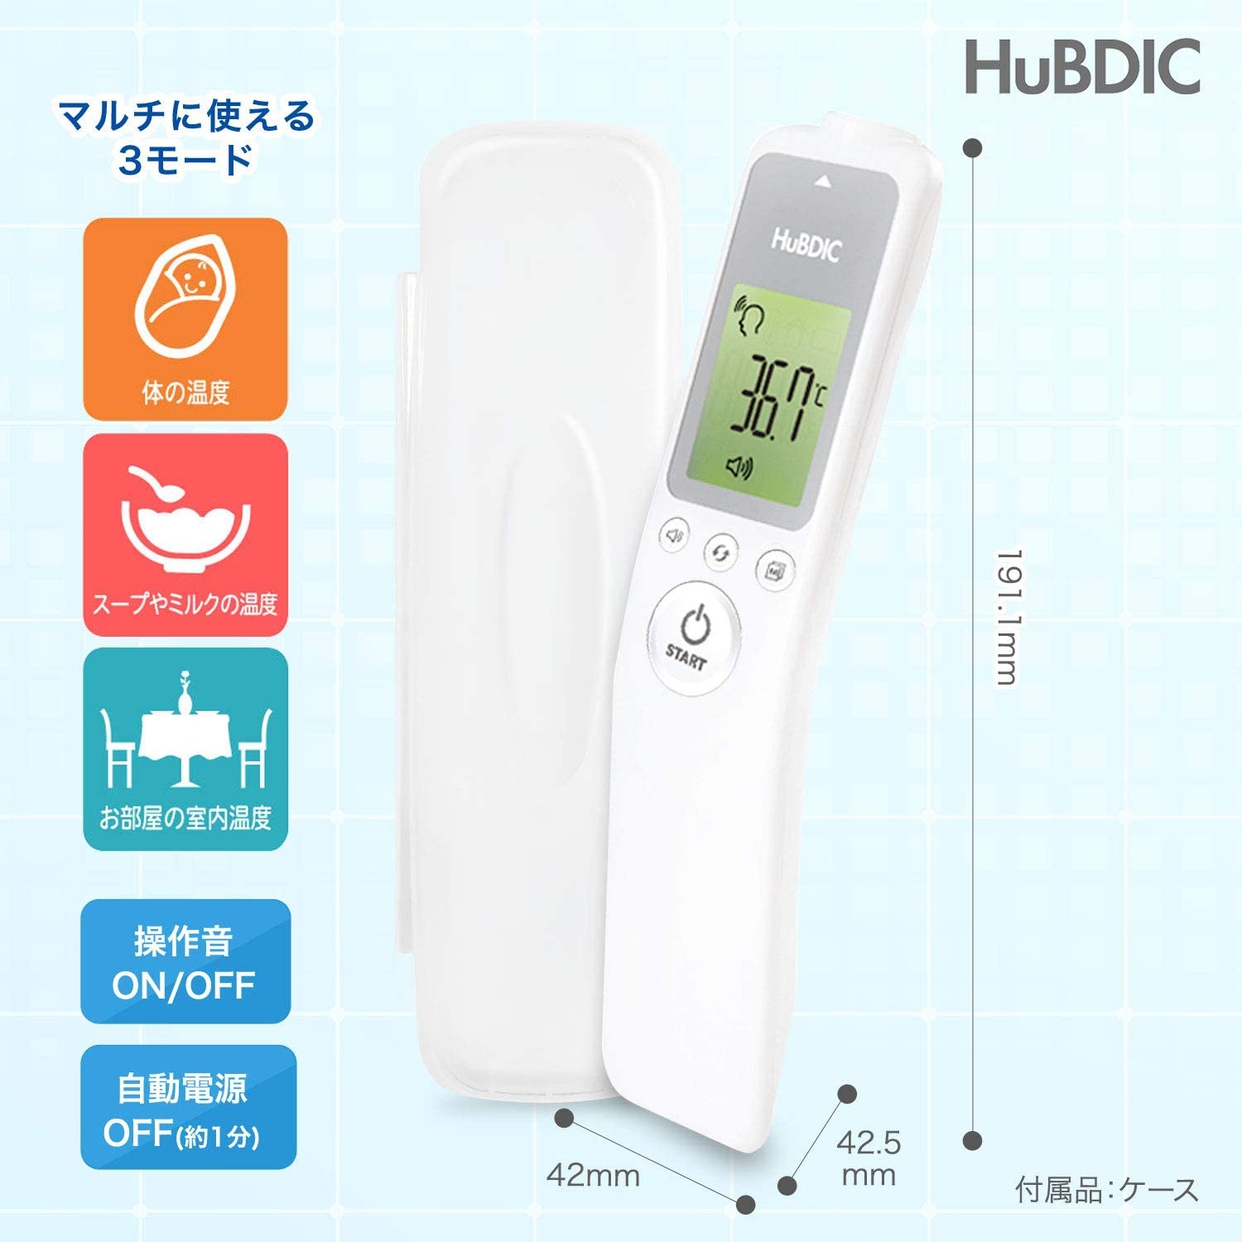 HuBDIC(ヒューデリック) 非接触体温計1000 HFS-1000の商品画像7 